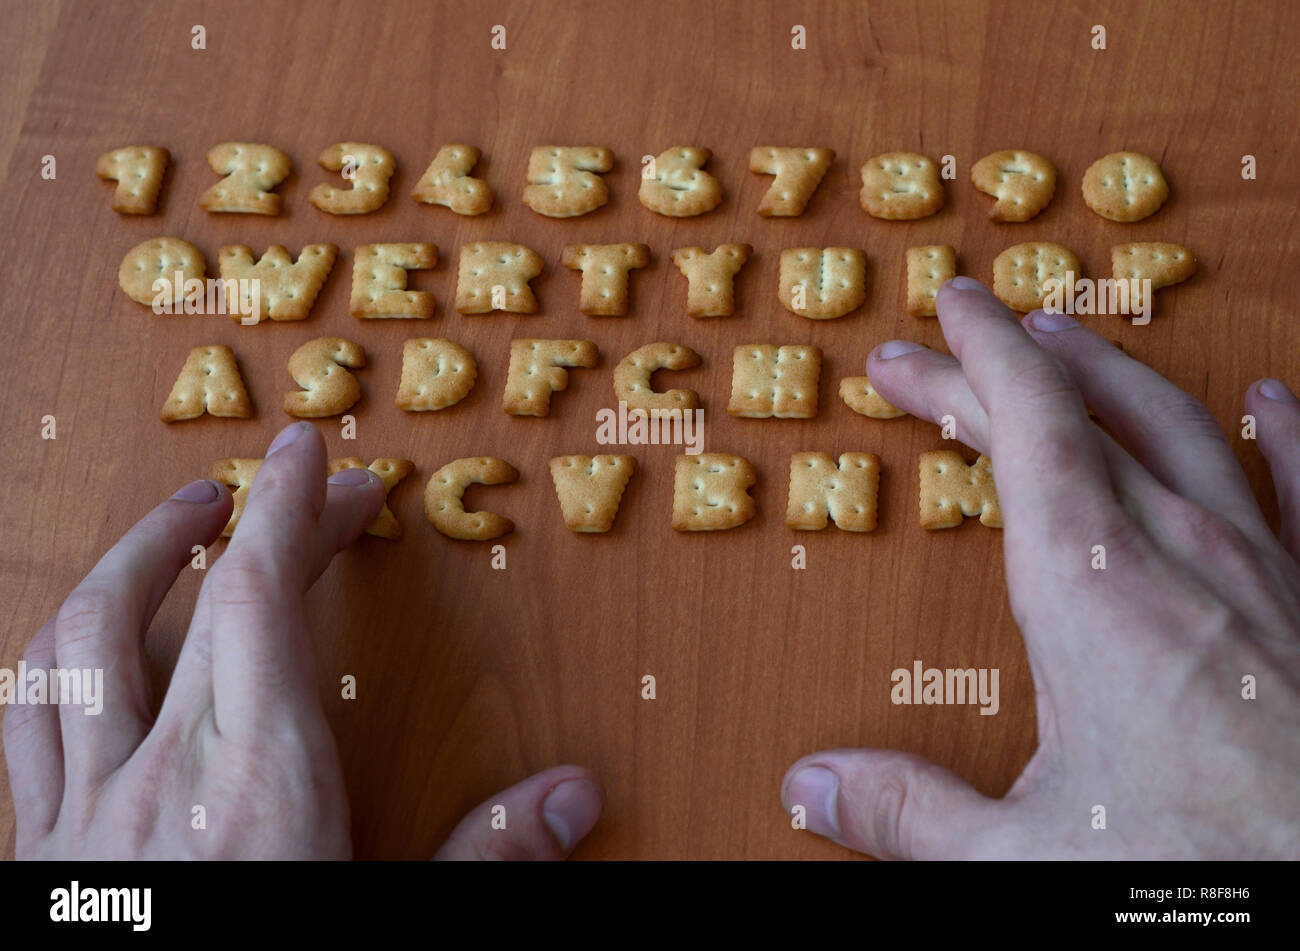 Gli uomini le dita per digitare sulla tastiera, che è composto di cracker salato in forma di lettere e numeri. La simulazione di una tastiera di computer utilizzando di c Foto Stock